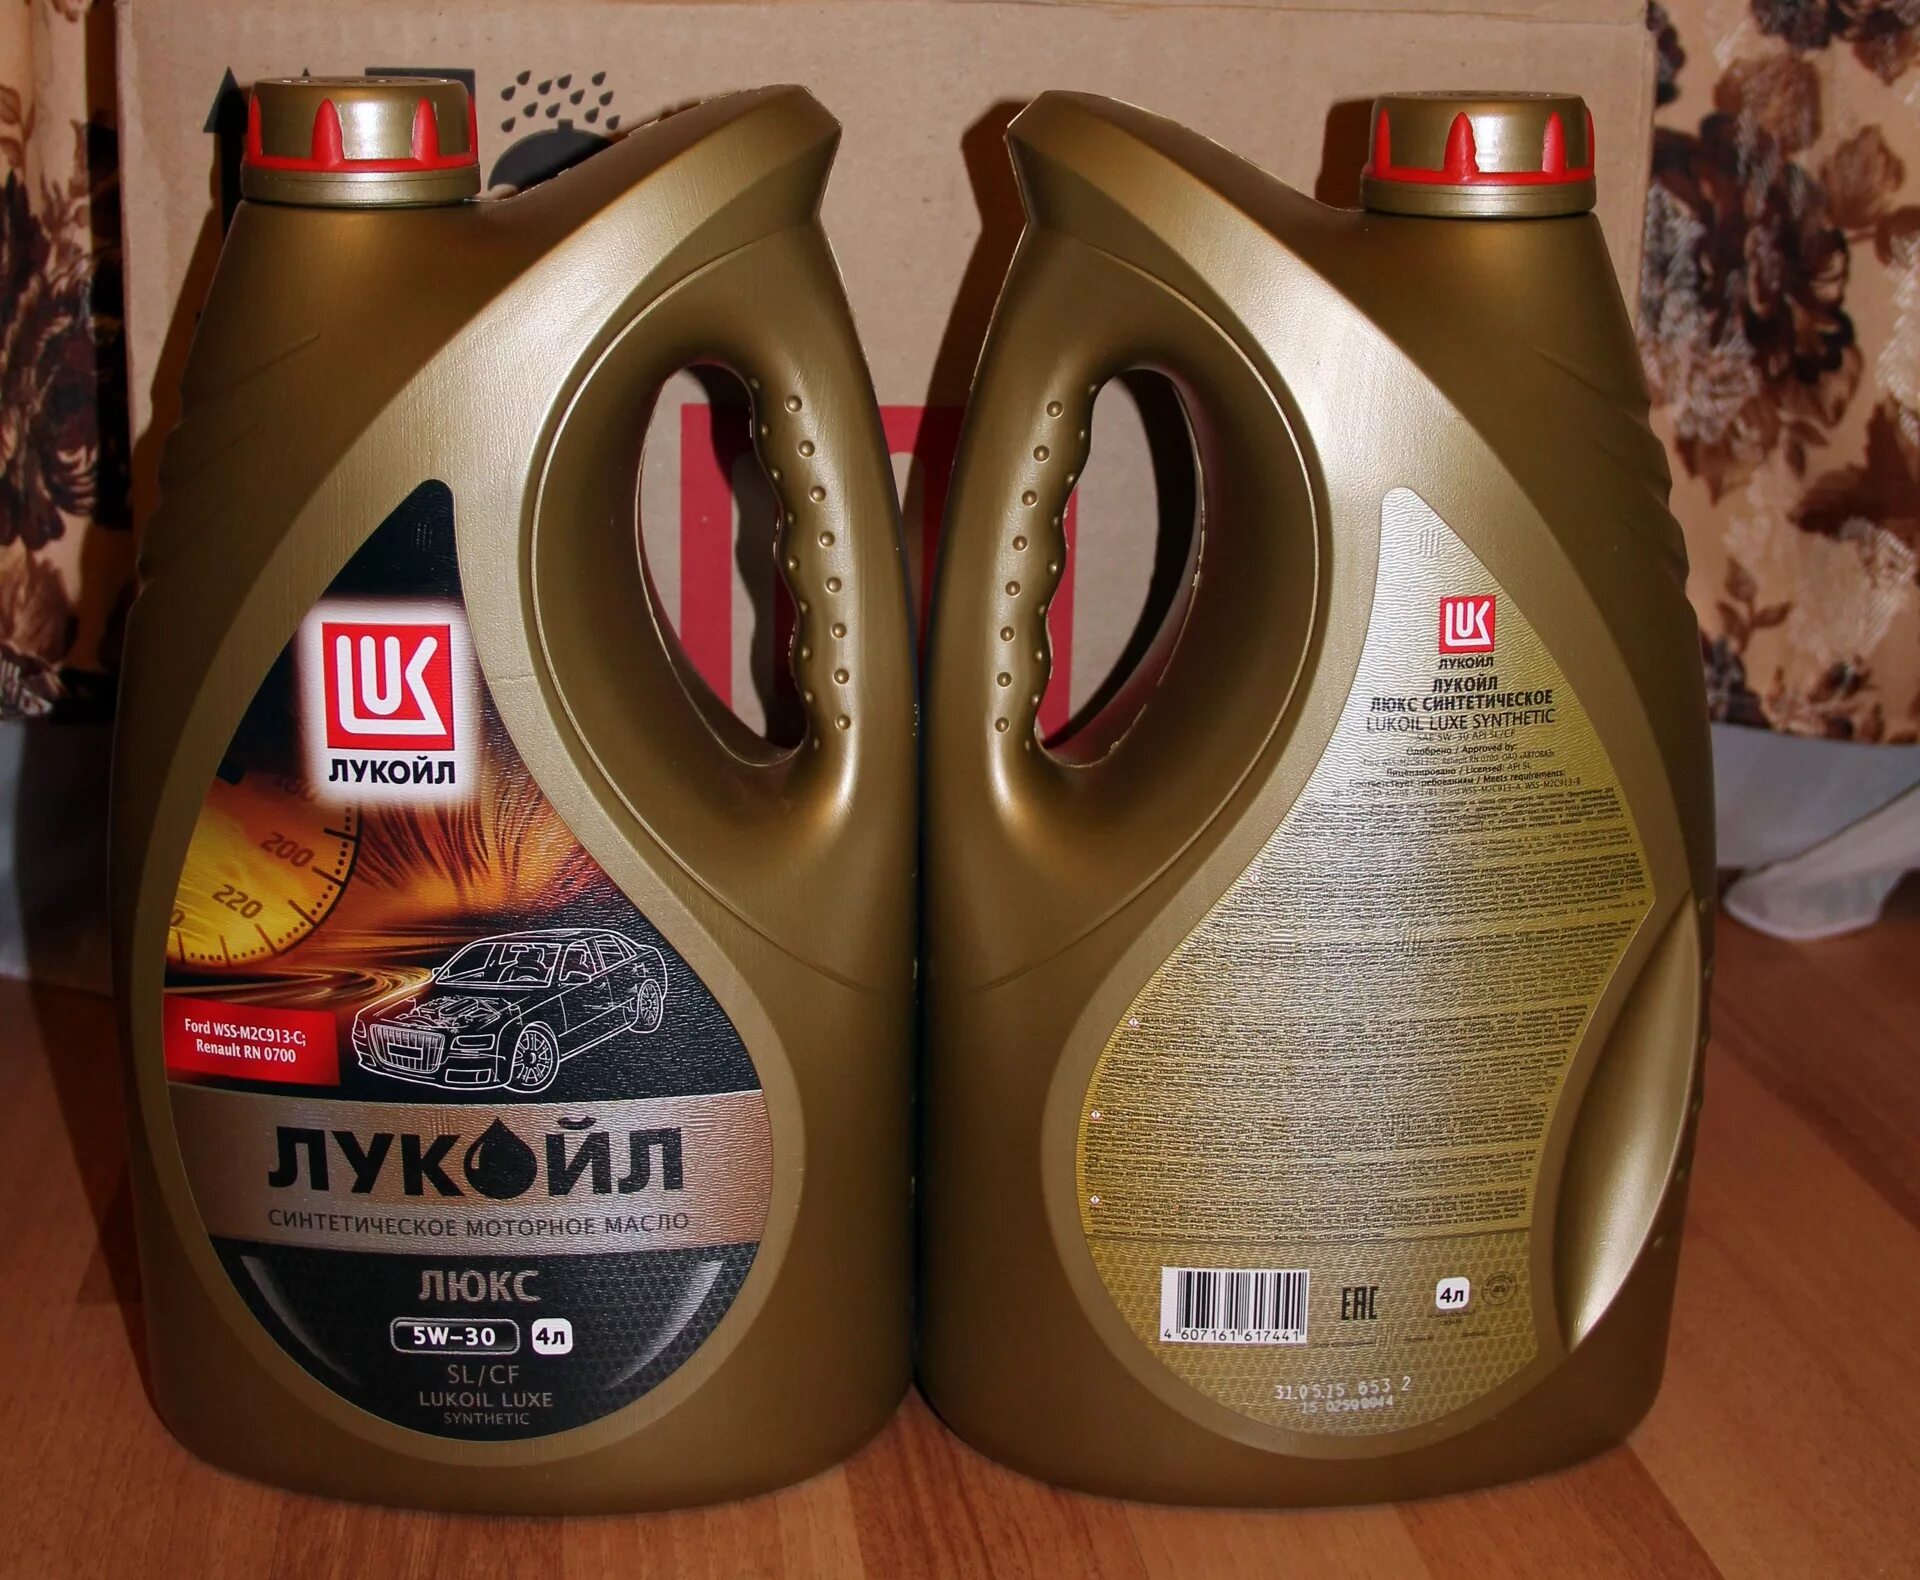 Русское моторное масло. Масло моторное 5w30 полусинтетика Лукойл. Лукойл-Люкс 5w40 4л синтетика. Масло Лукойл 5w30 полусинтетика. Лукойл Люкс 5w30 4л.